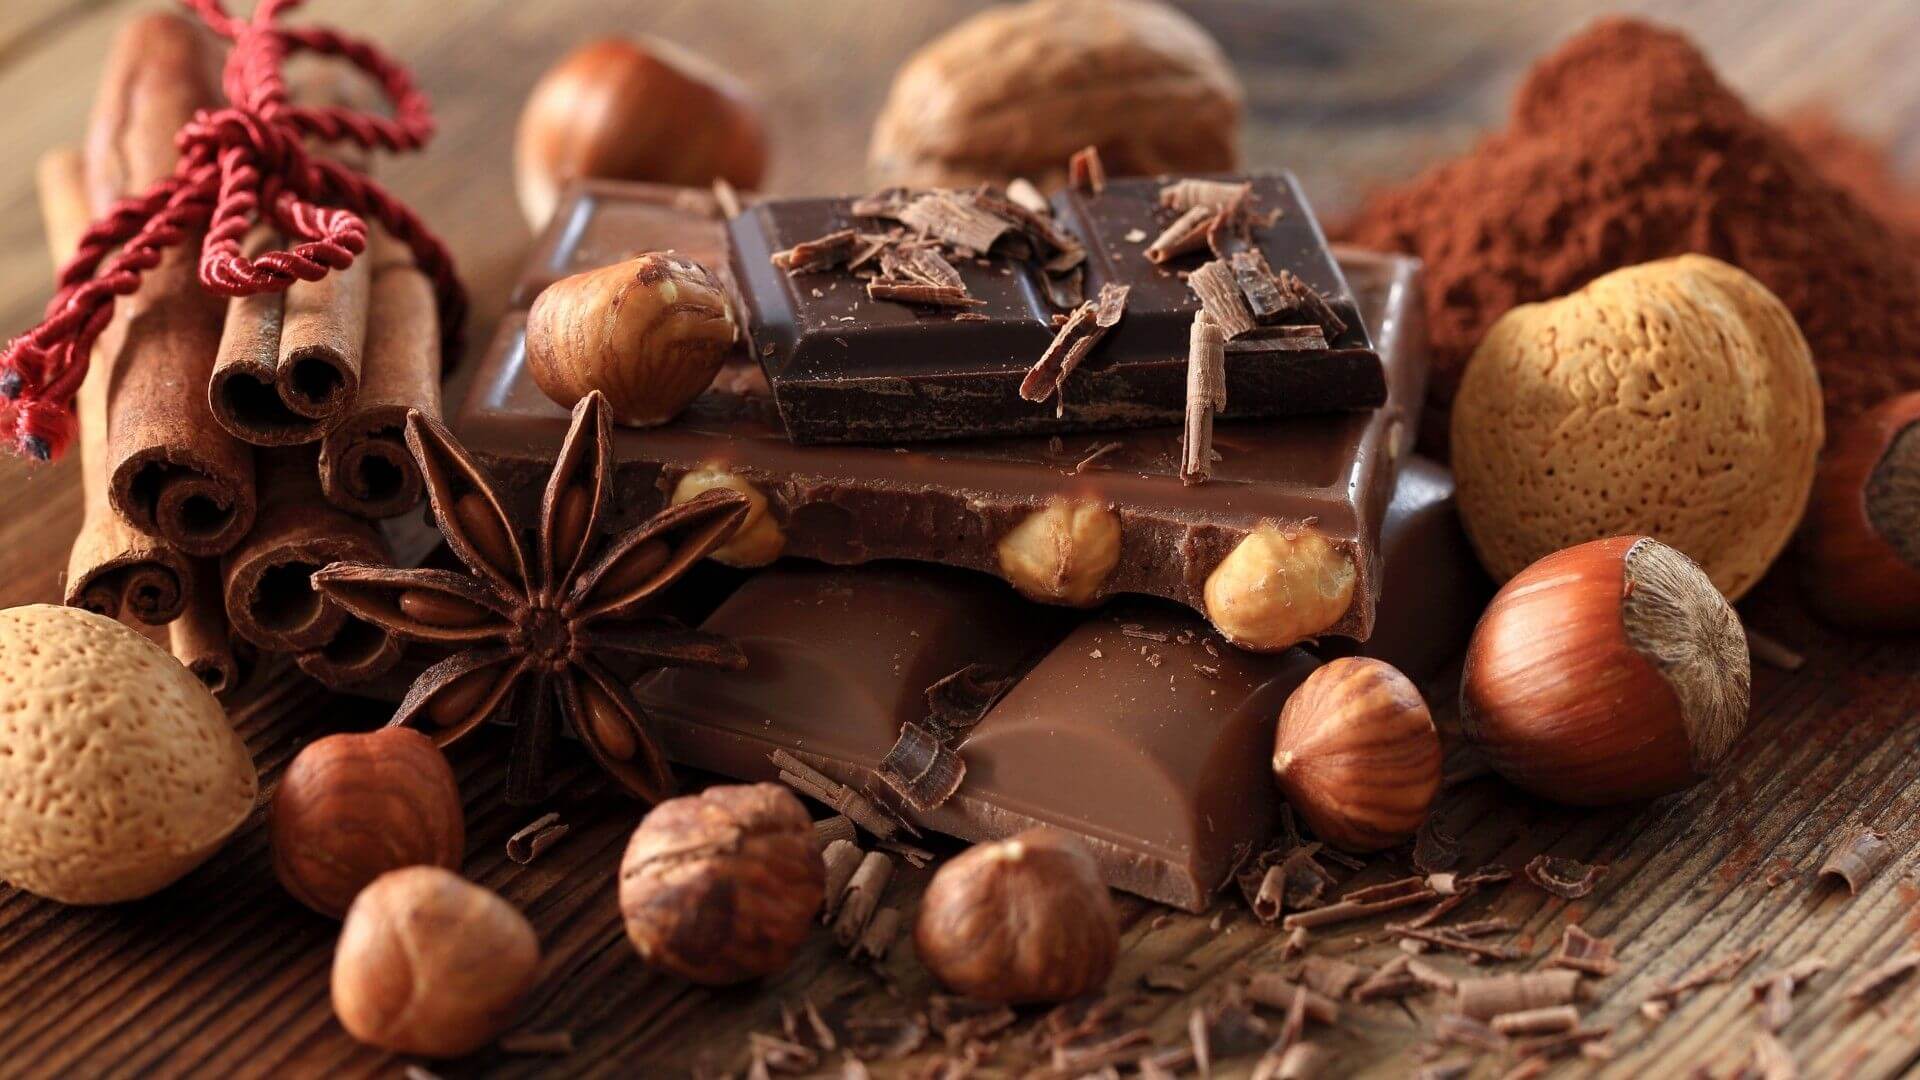 Bộ hình nền Chocolate ngọt ngào nhất cho những người hảo ngọt